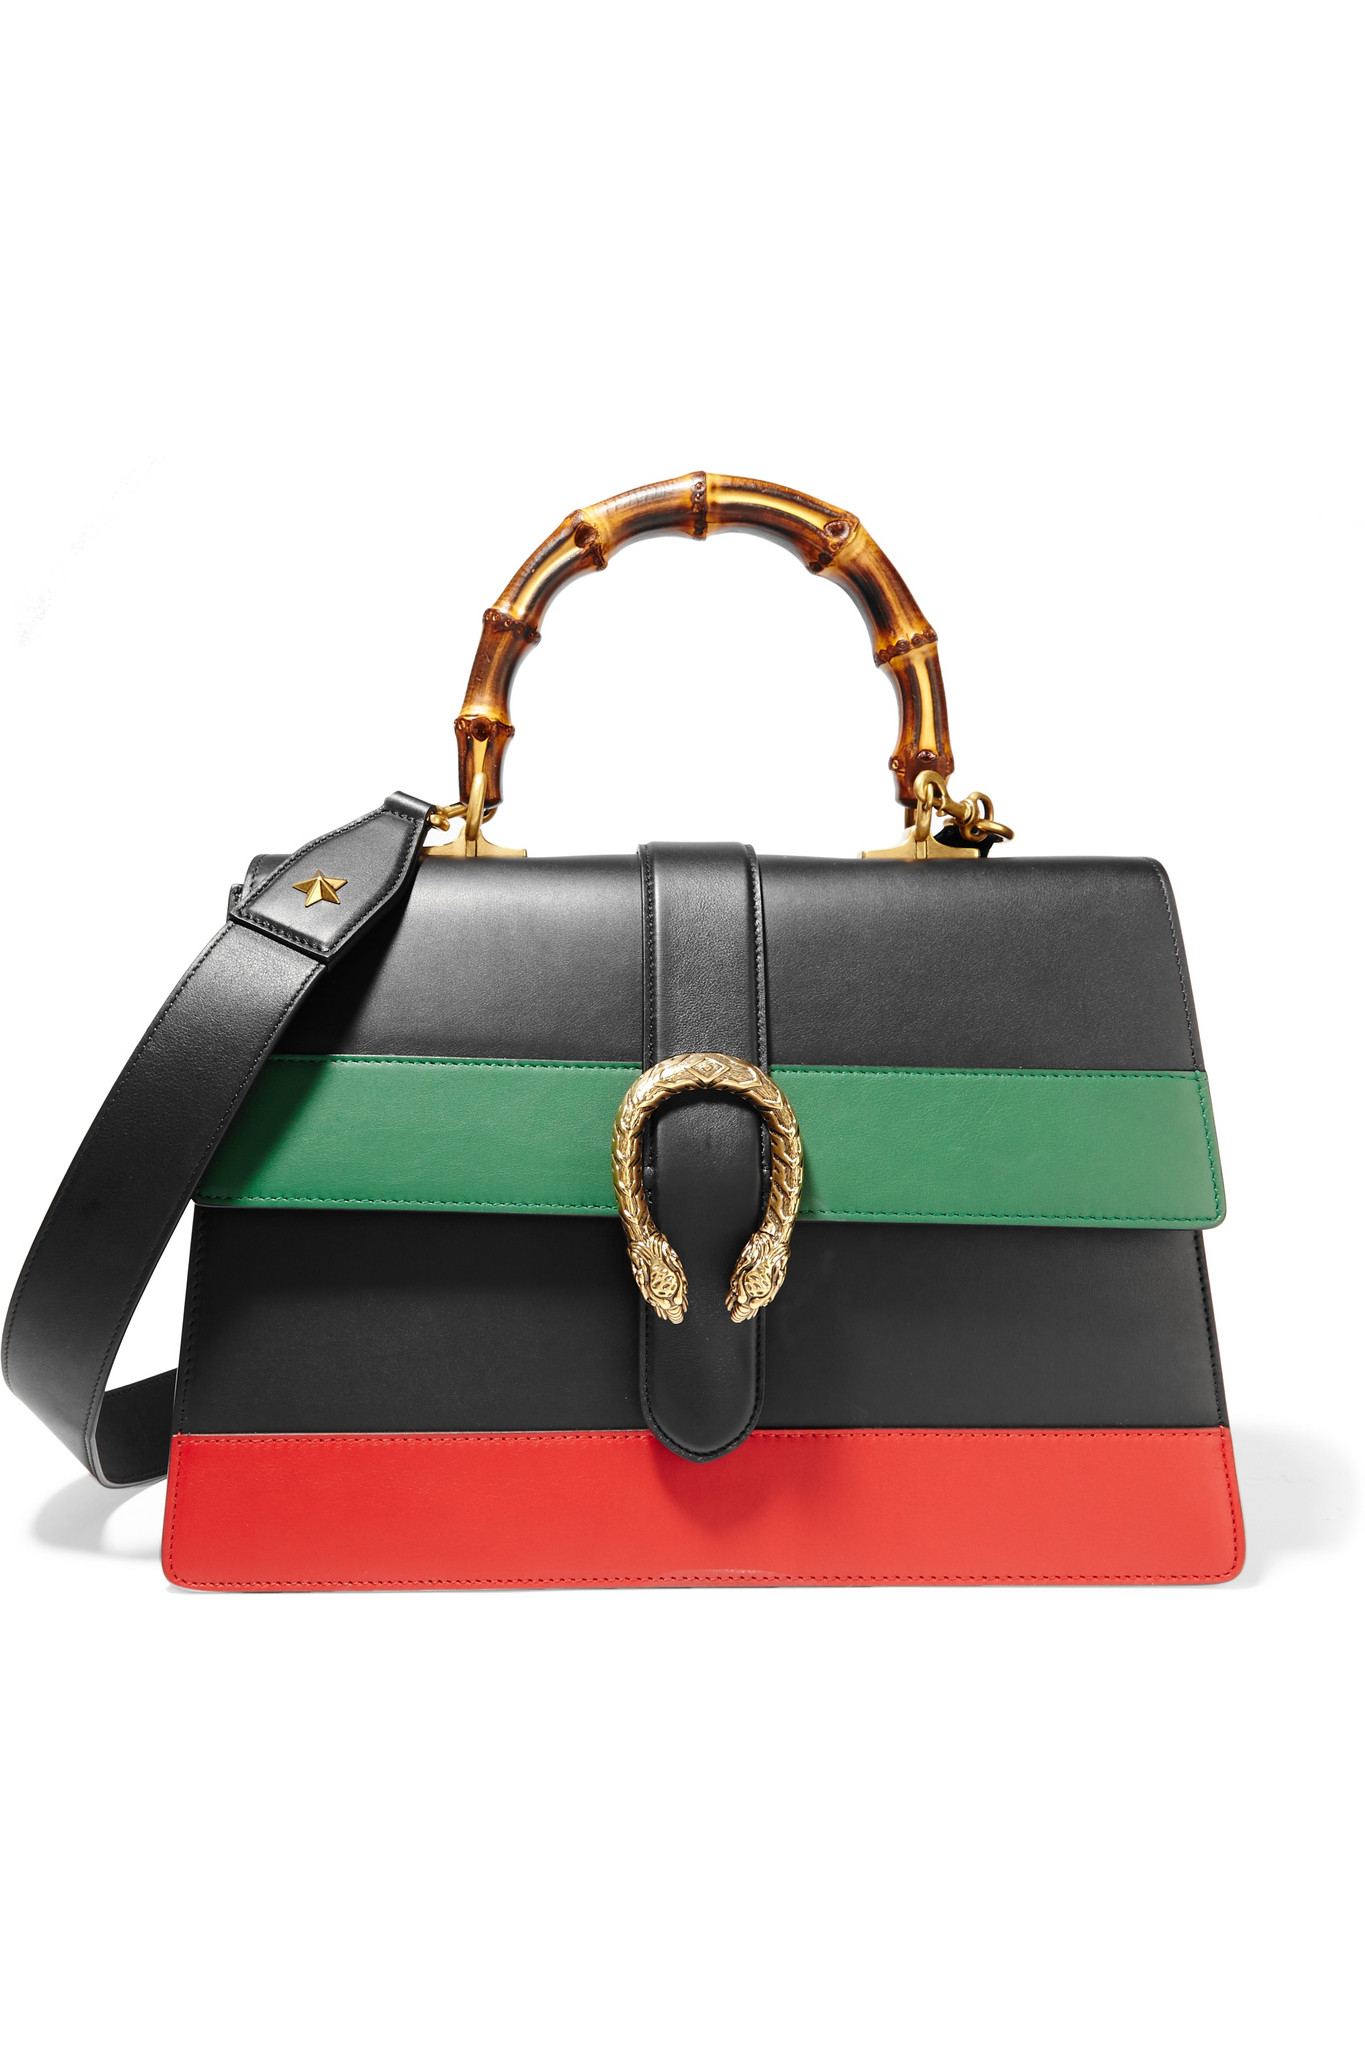 Gucci Dionysus Large Paneled Leather Shoulder Bag in Black - Lyst